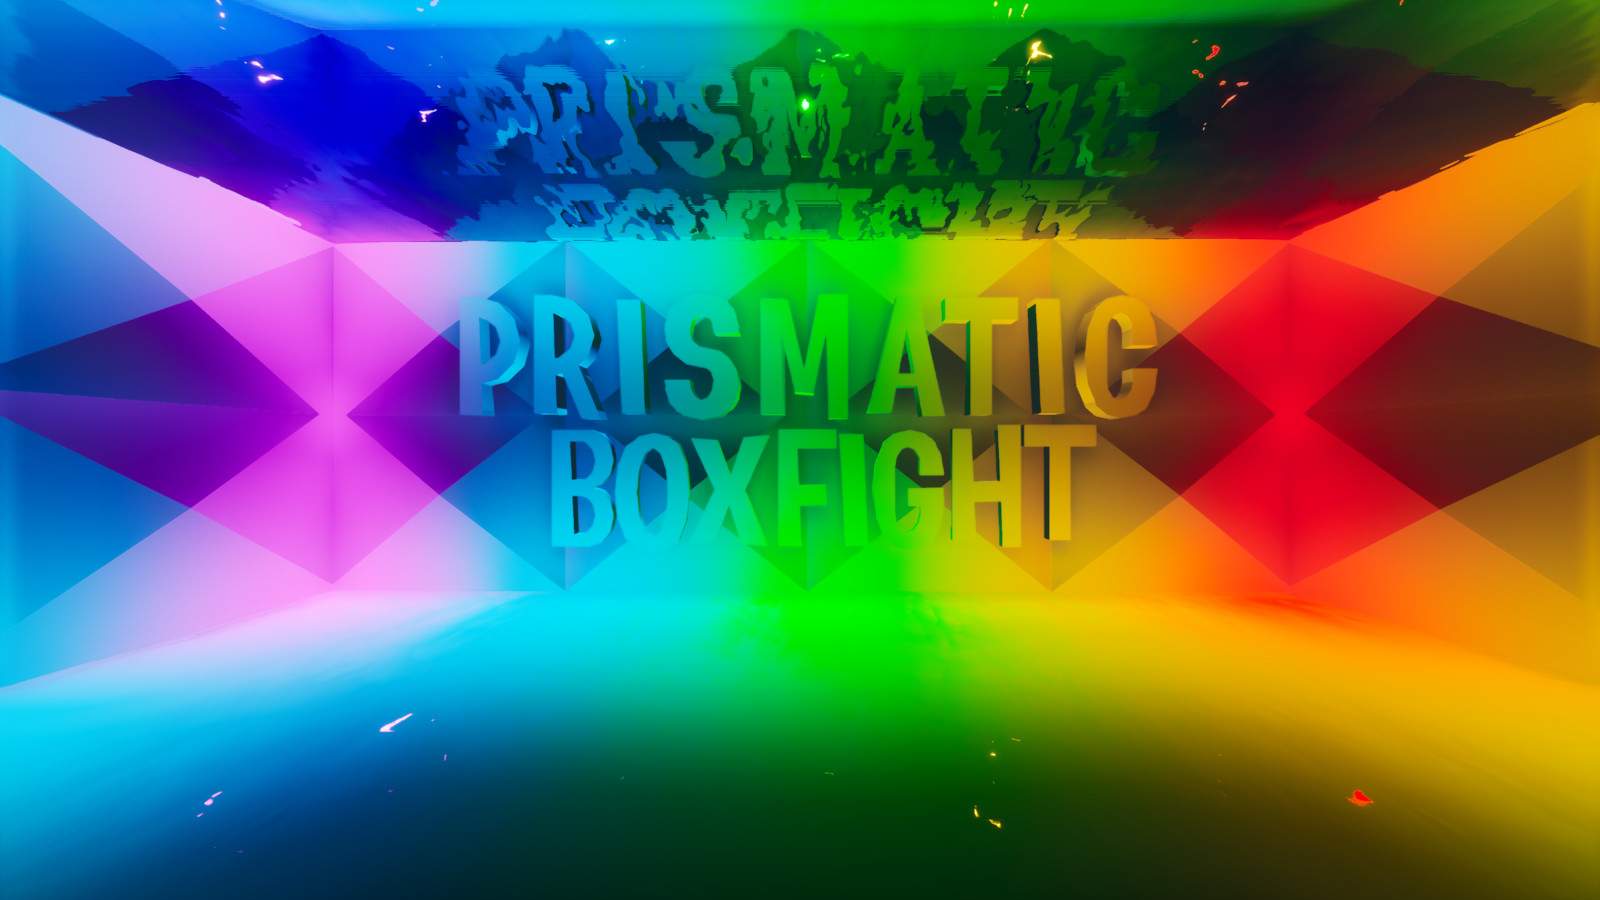 PRISMATIC BOXFIGHT